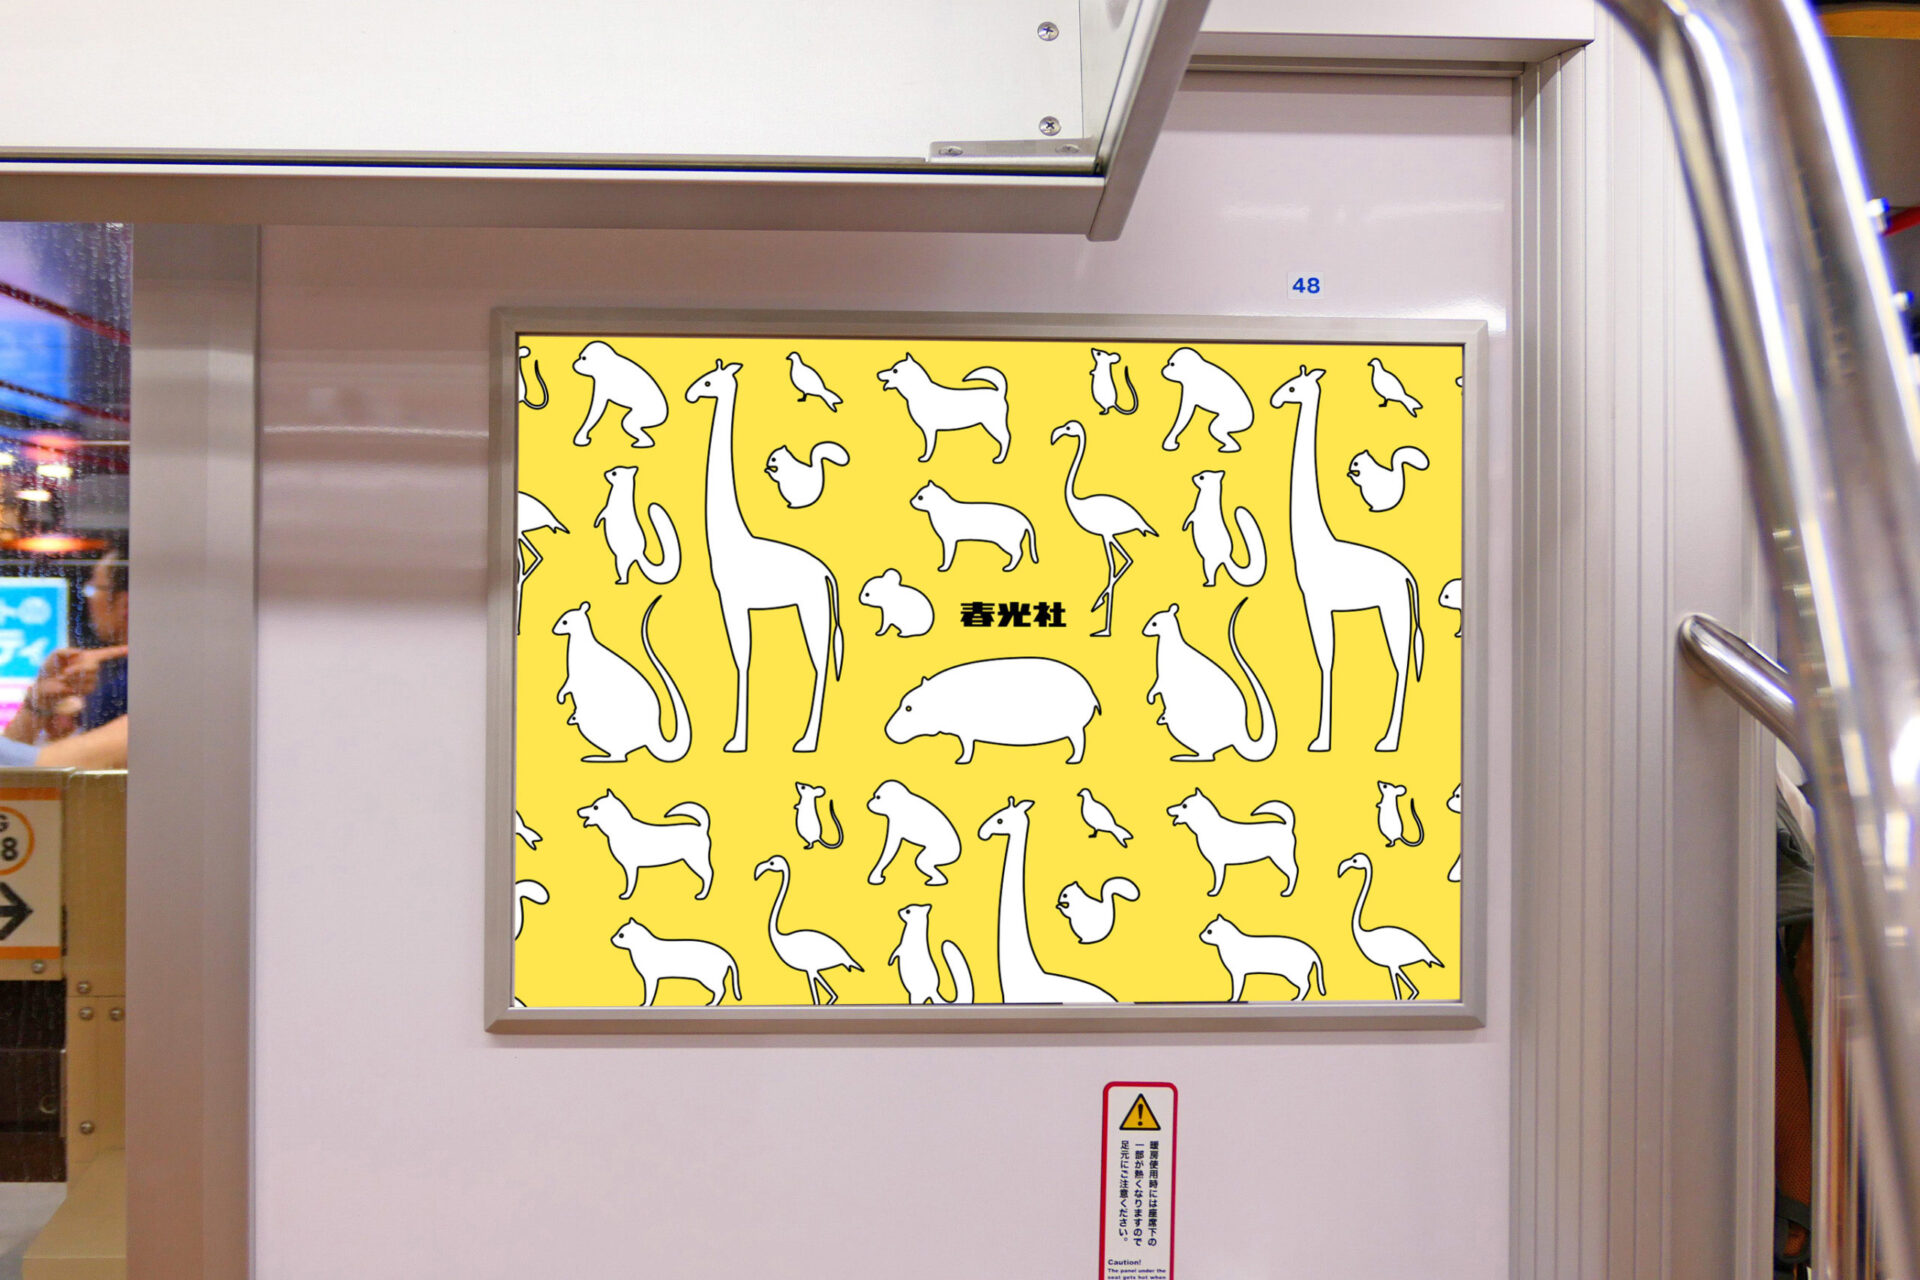 東京メトロ銀座線車内ドア横に設置されているポスター